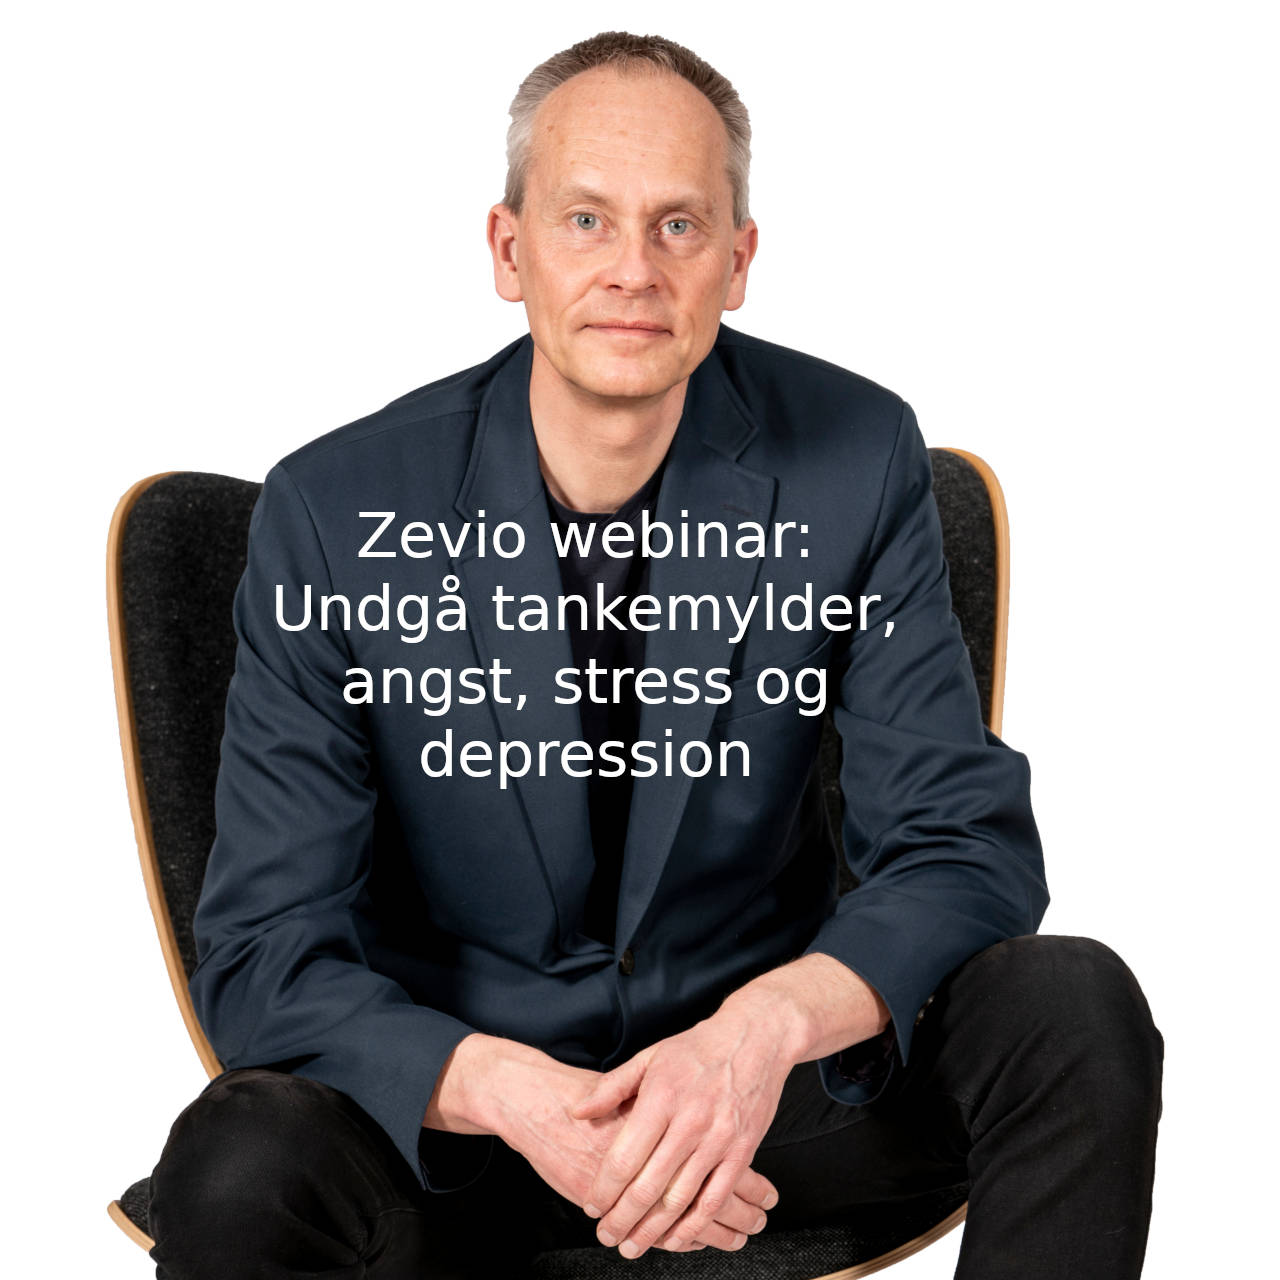 Kim Oechsle fra hypnotiseret.dk holder webinar på Zevio om tankemylder, stress, angst, depression